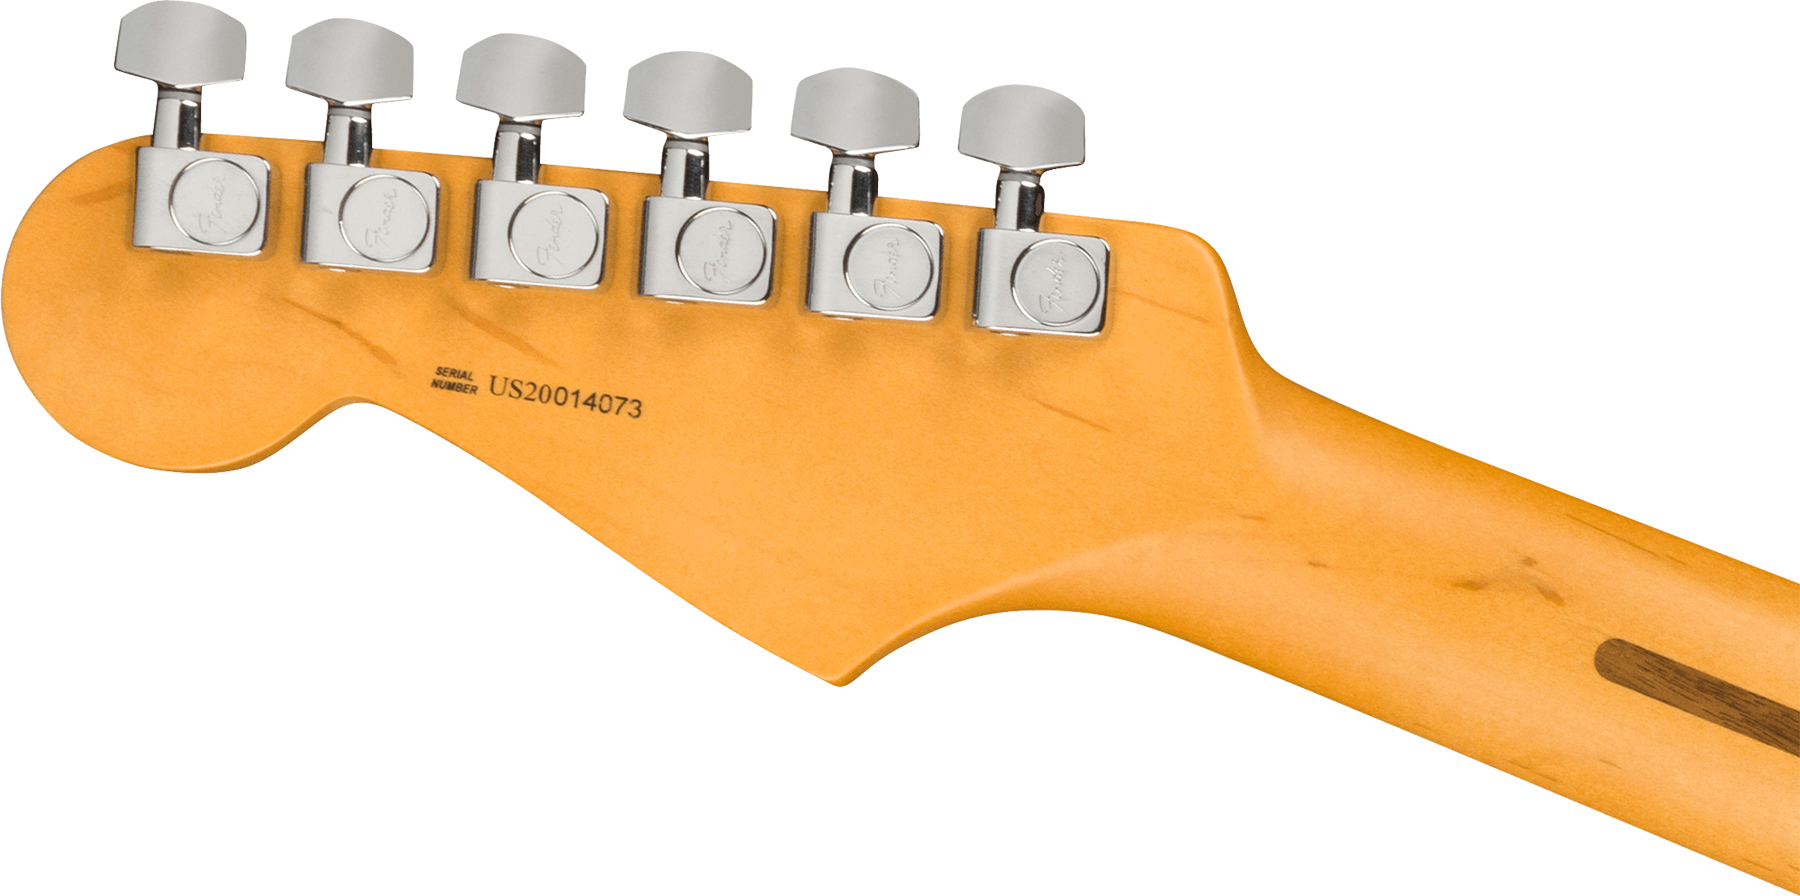 Fender Strat American Professional Ii Lh Gaucher Usa Mn - Mystic Surf Green - Guitarra electrica para zurdos - Variation 2